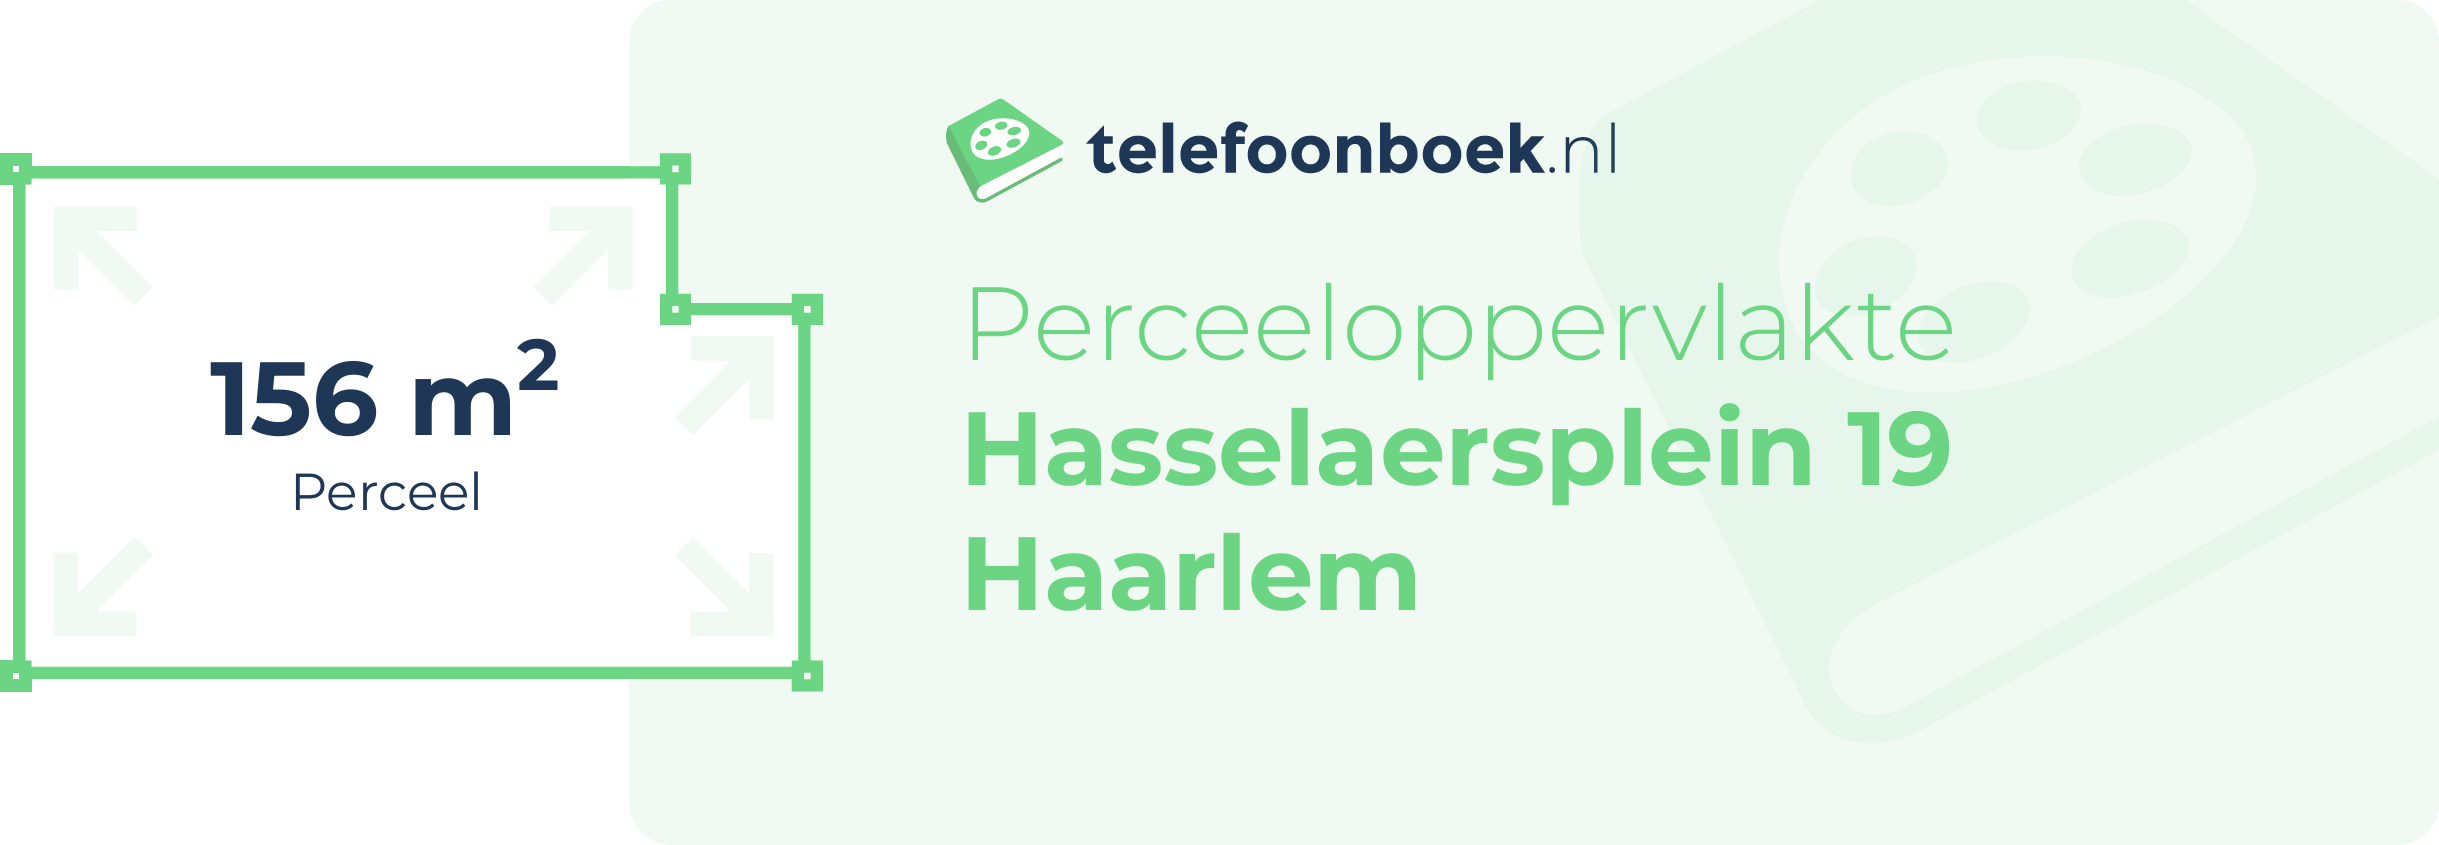 Perceeloppervlakte Hasselaersplein 19 Haarlem